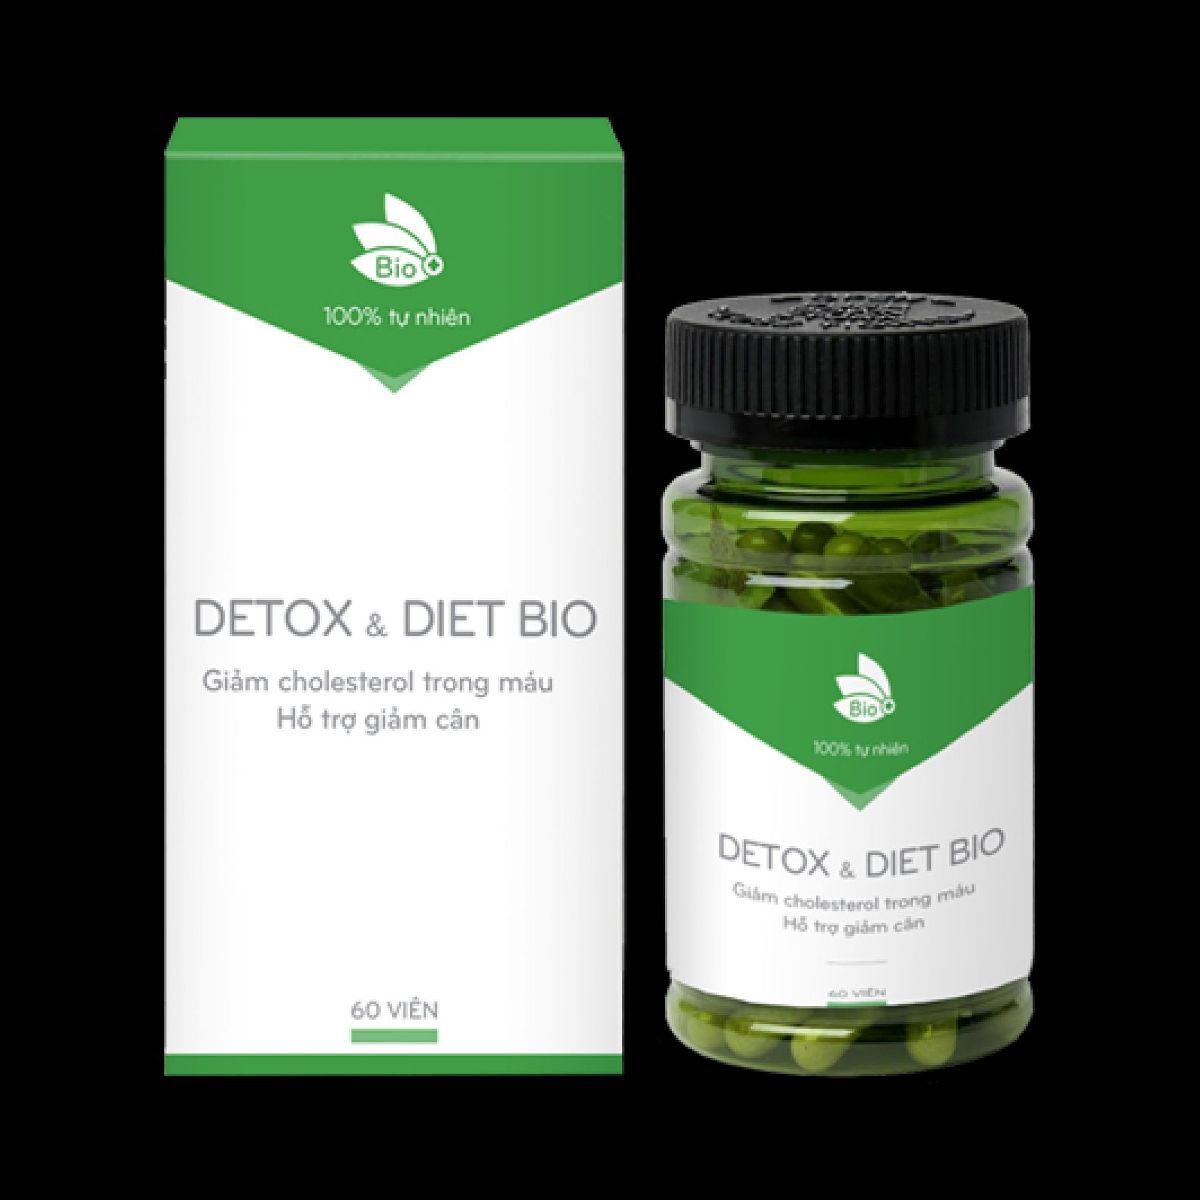 Detox Diet Bio được chiết xuất từ các thành phần tự nhiên